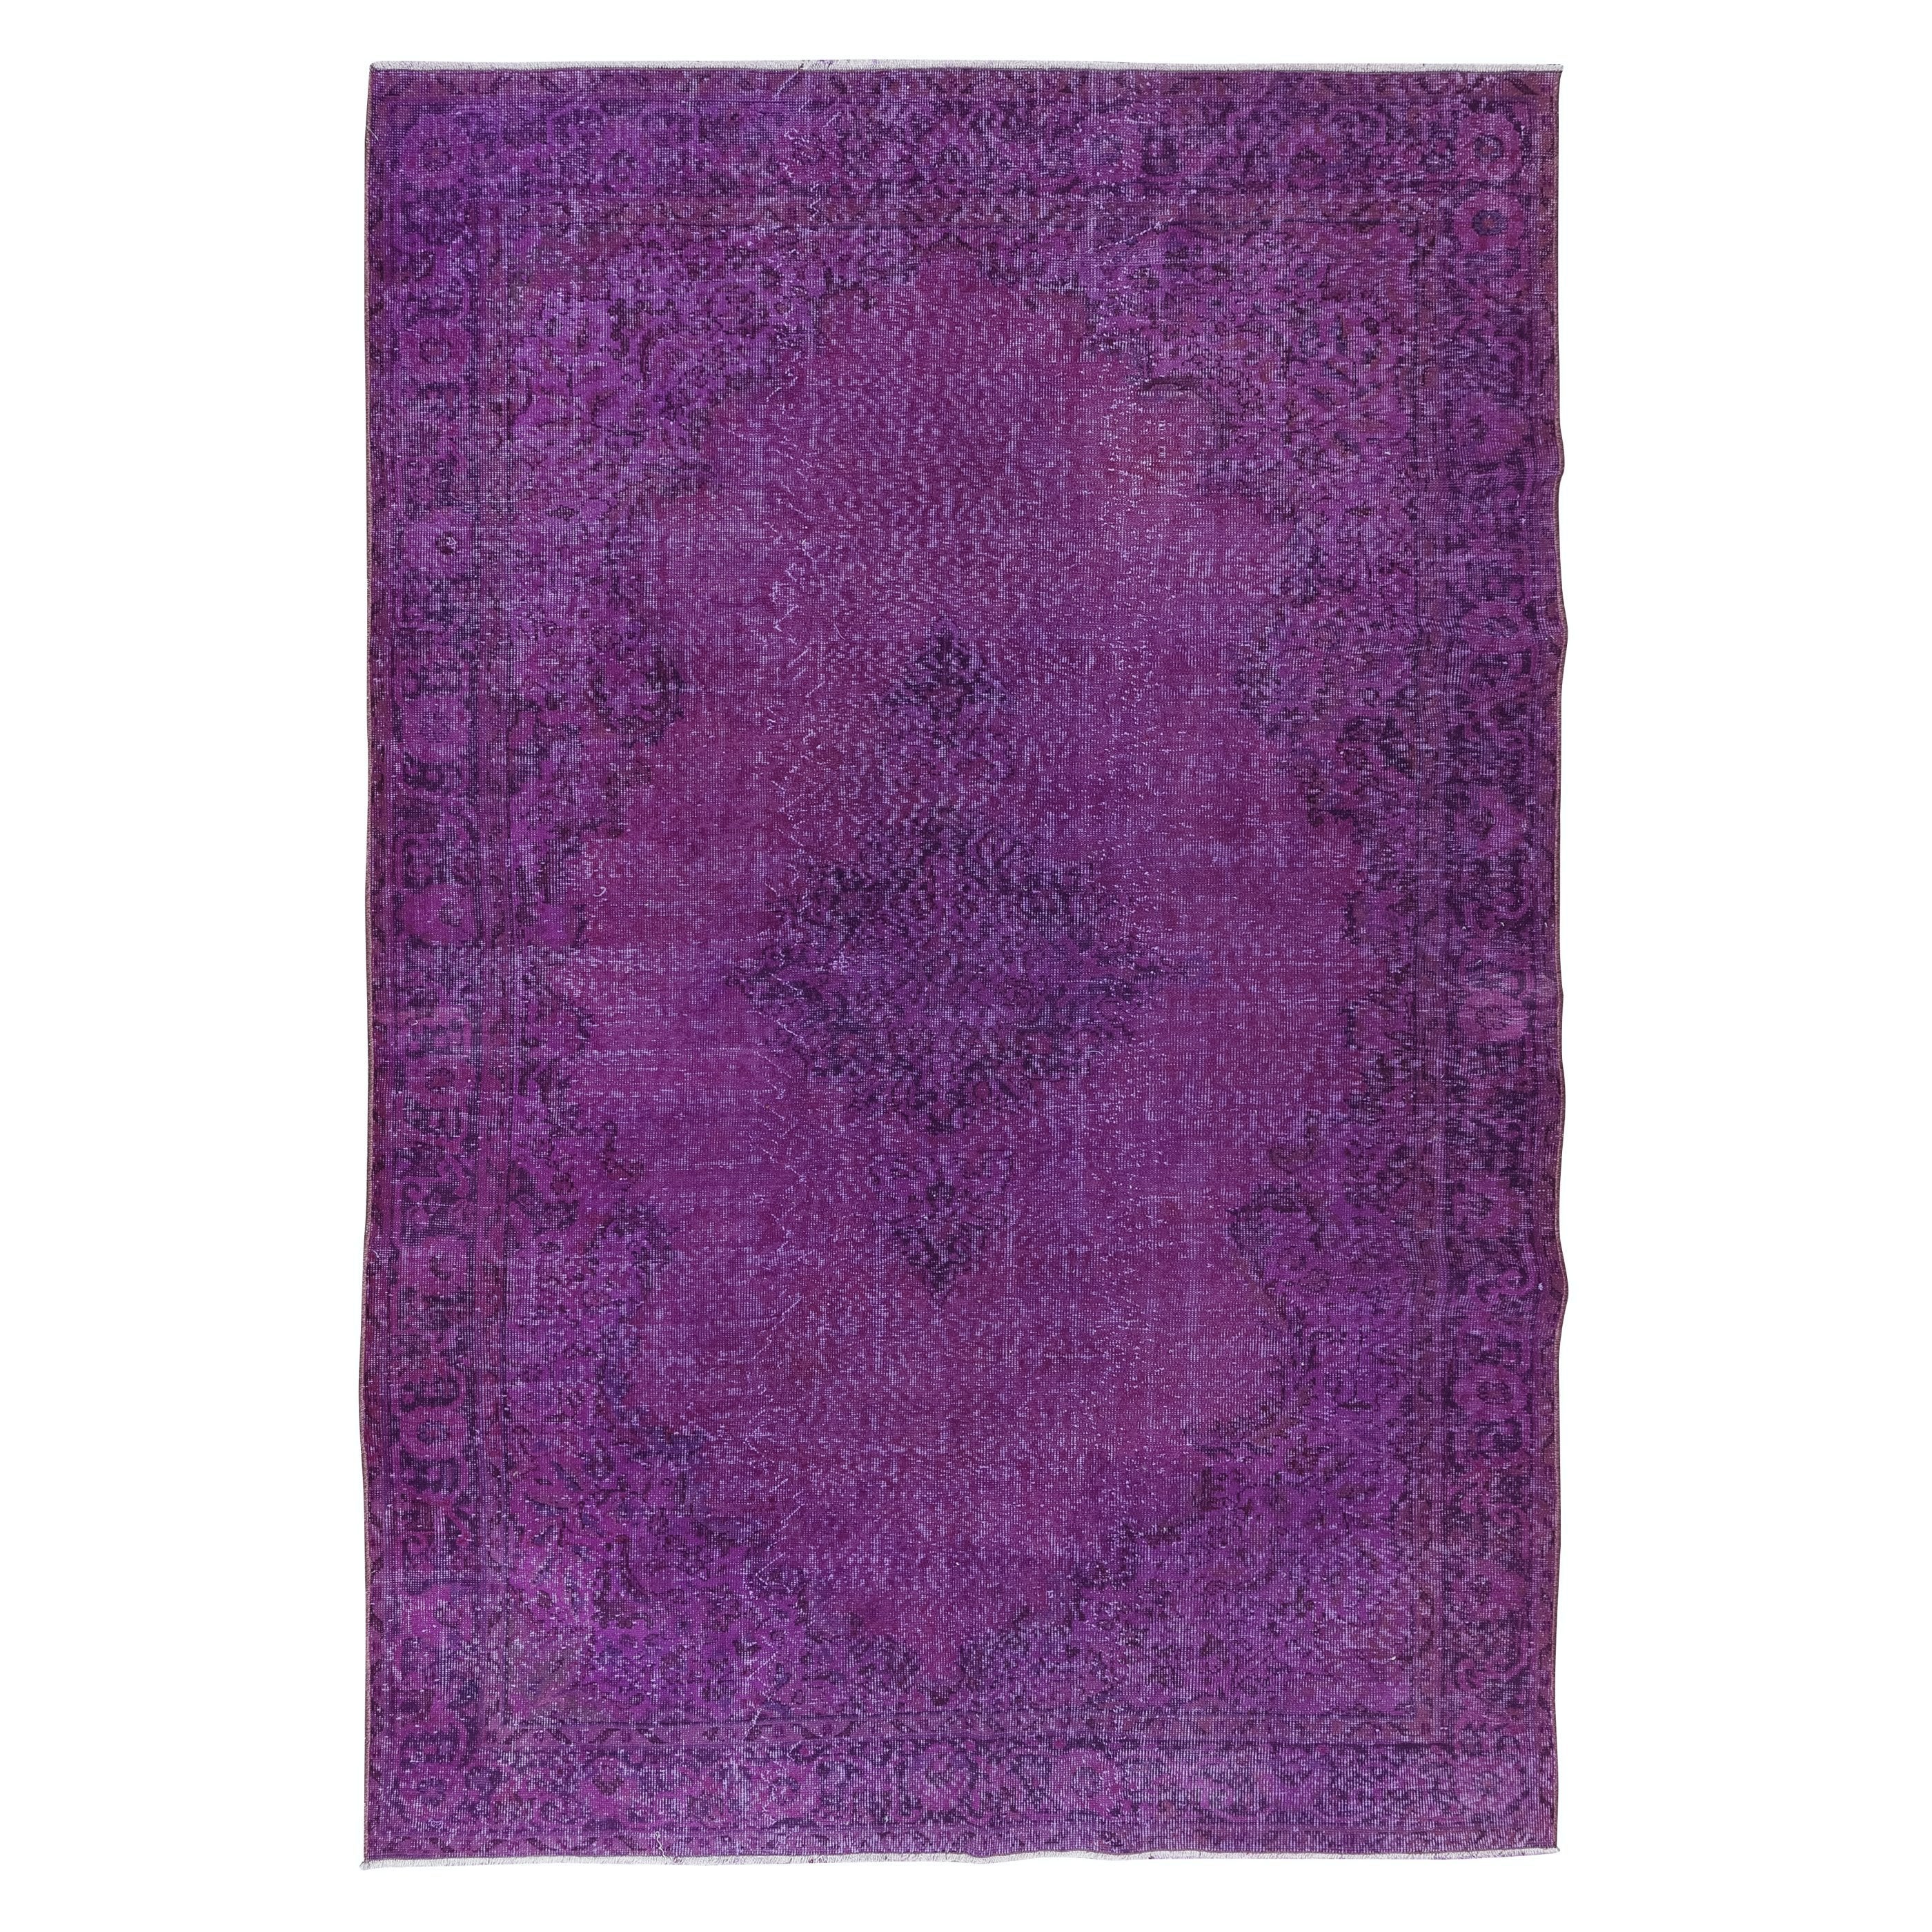 7x10 Ft Handgefertigter türkischer lila Teppich, ideal für moderne Inneneinrichtung